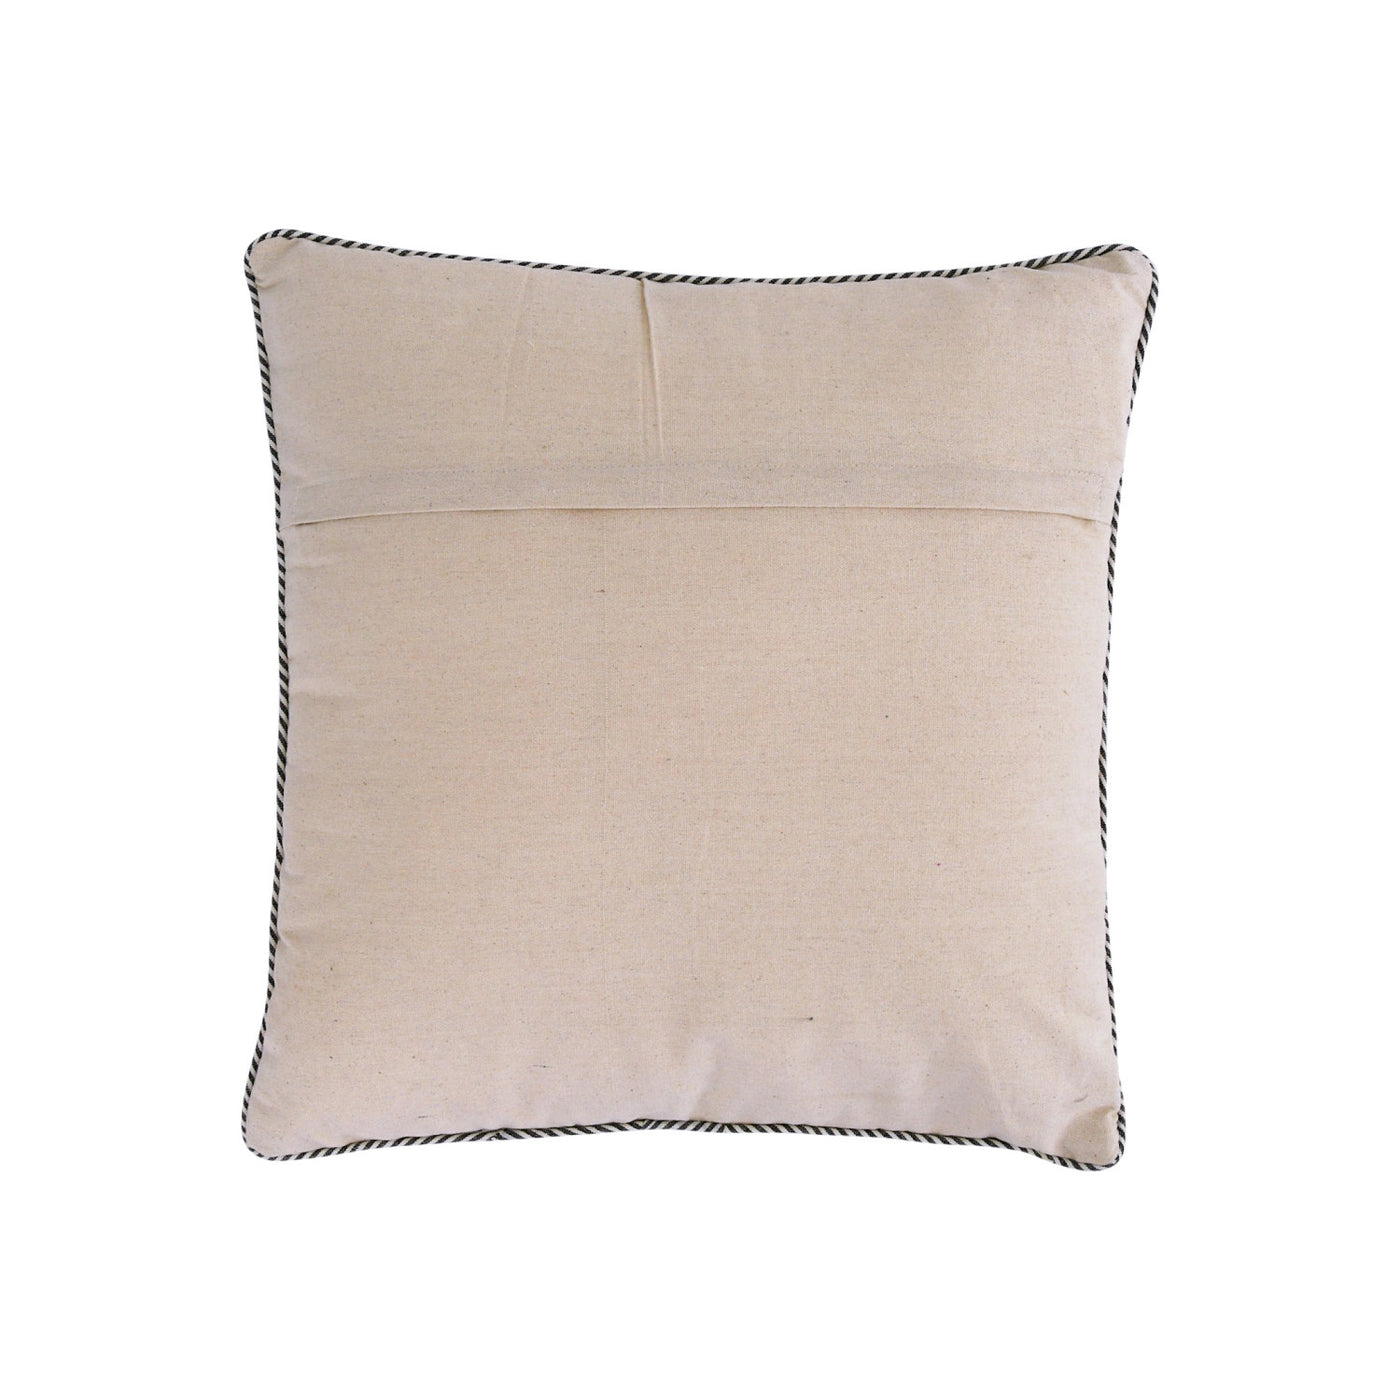 20" Cotton Sailboat Pillow